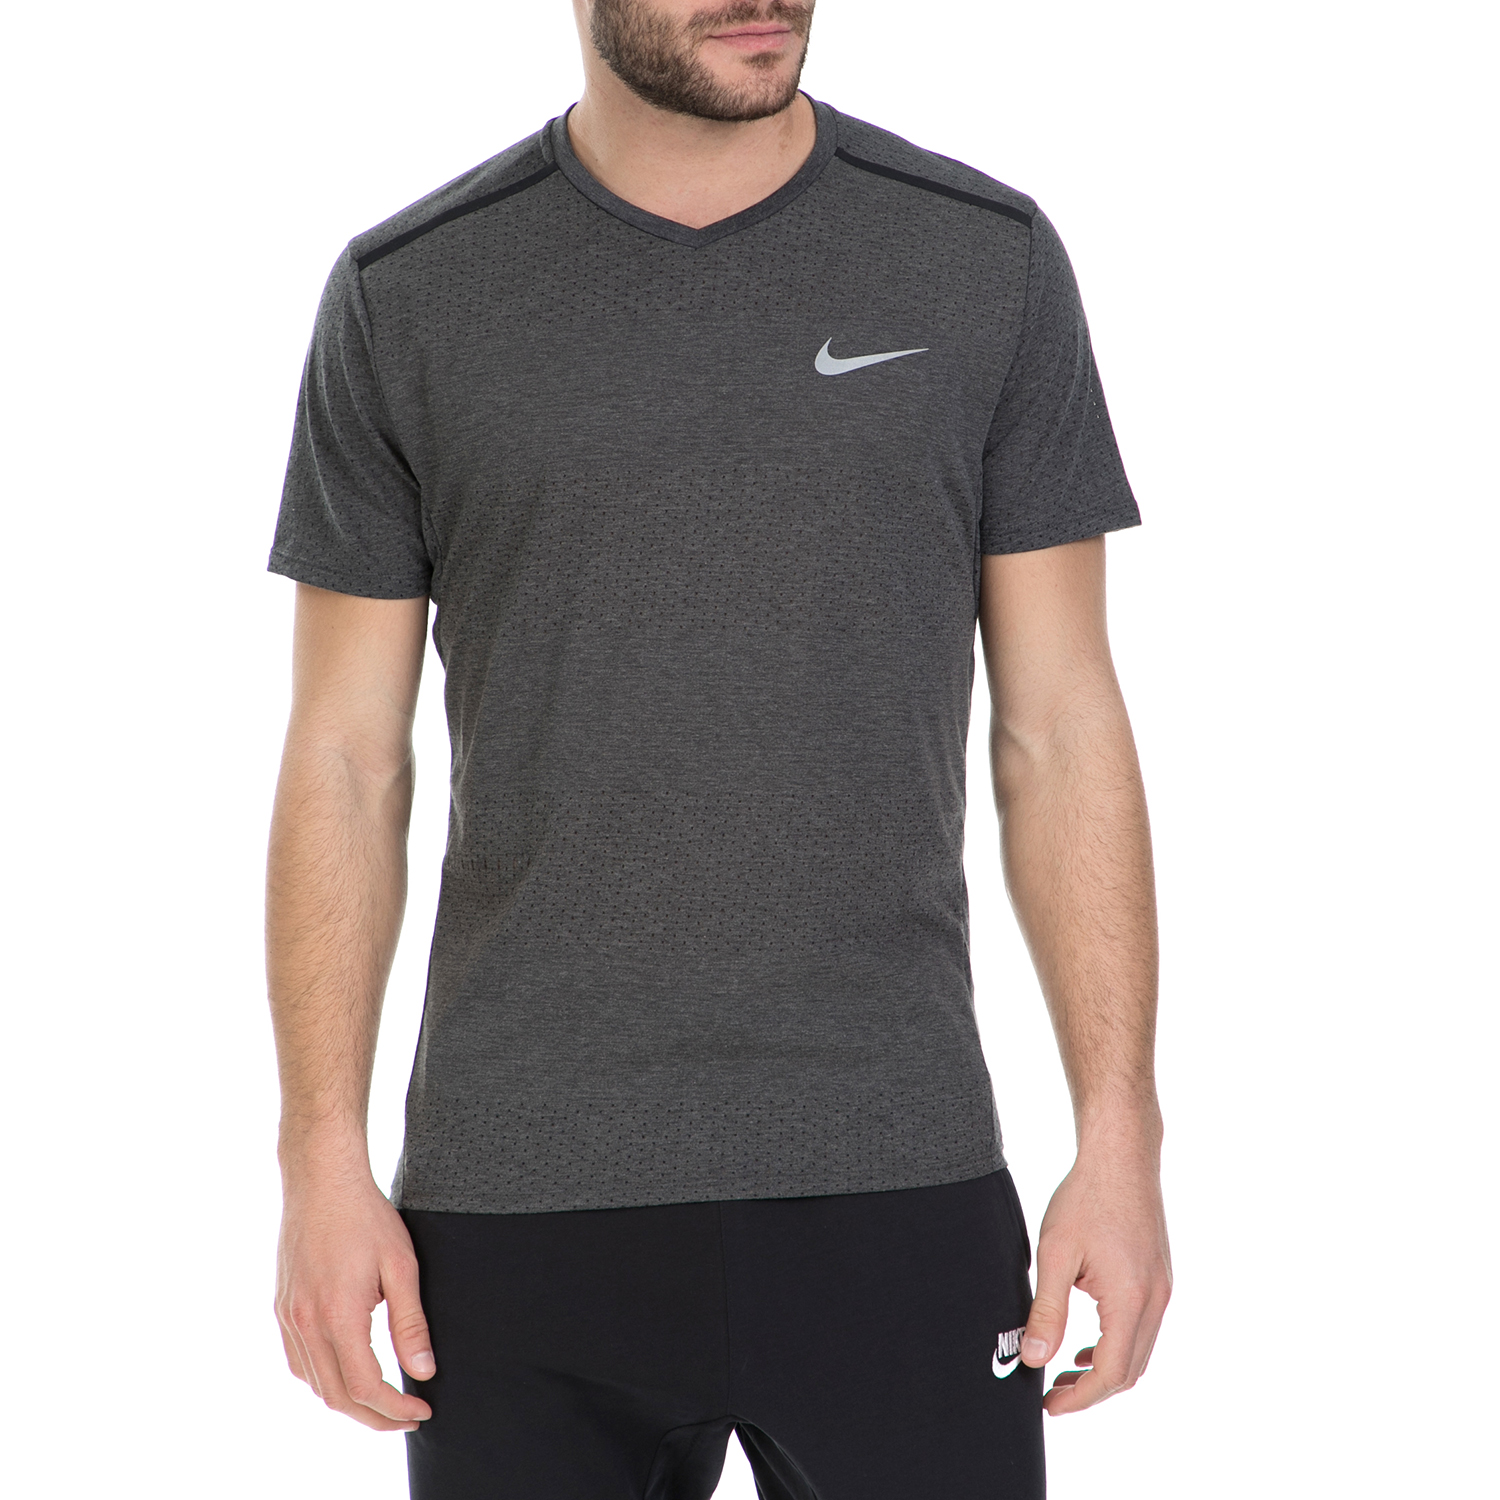 Ανδρικά/Ρούχα/Αθλητικά/T-shirt NIKE - Κοντομάνικη μπλούζα Nike σκούρο γκρι